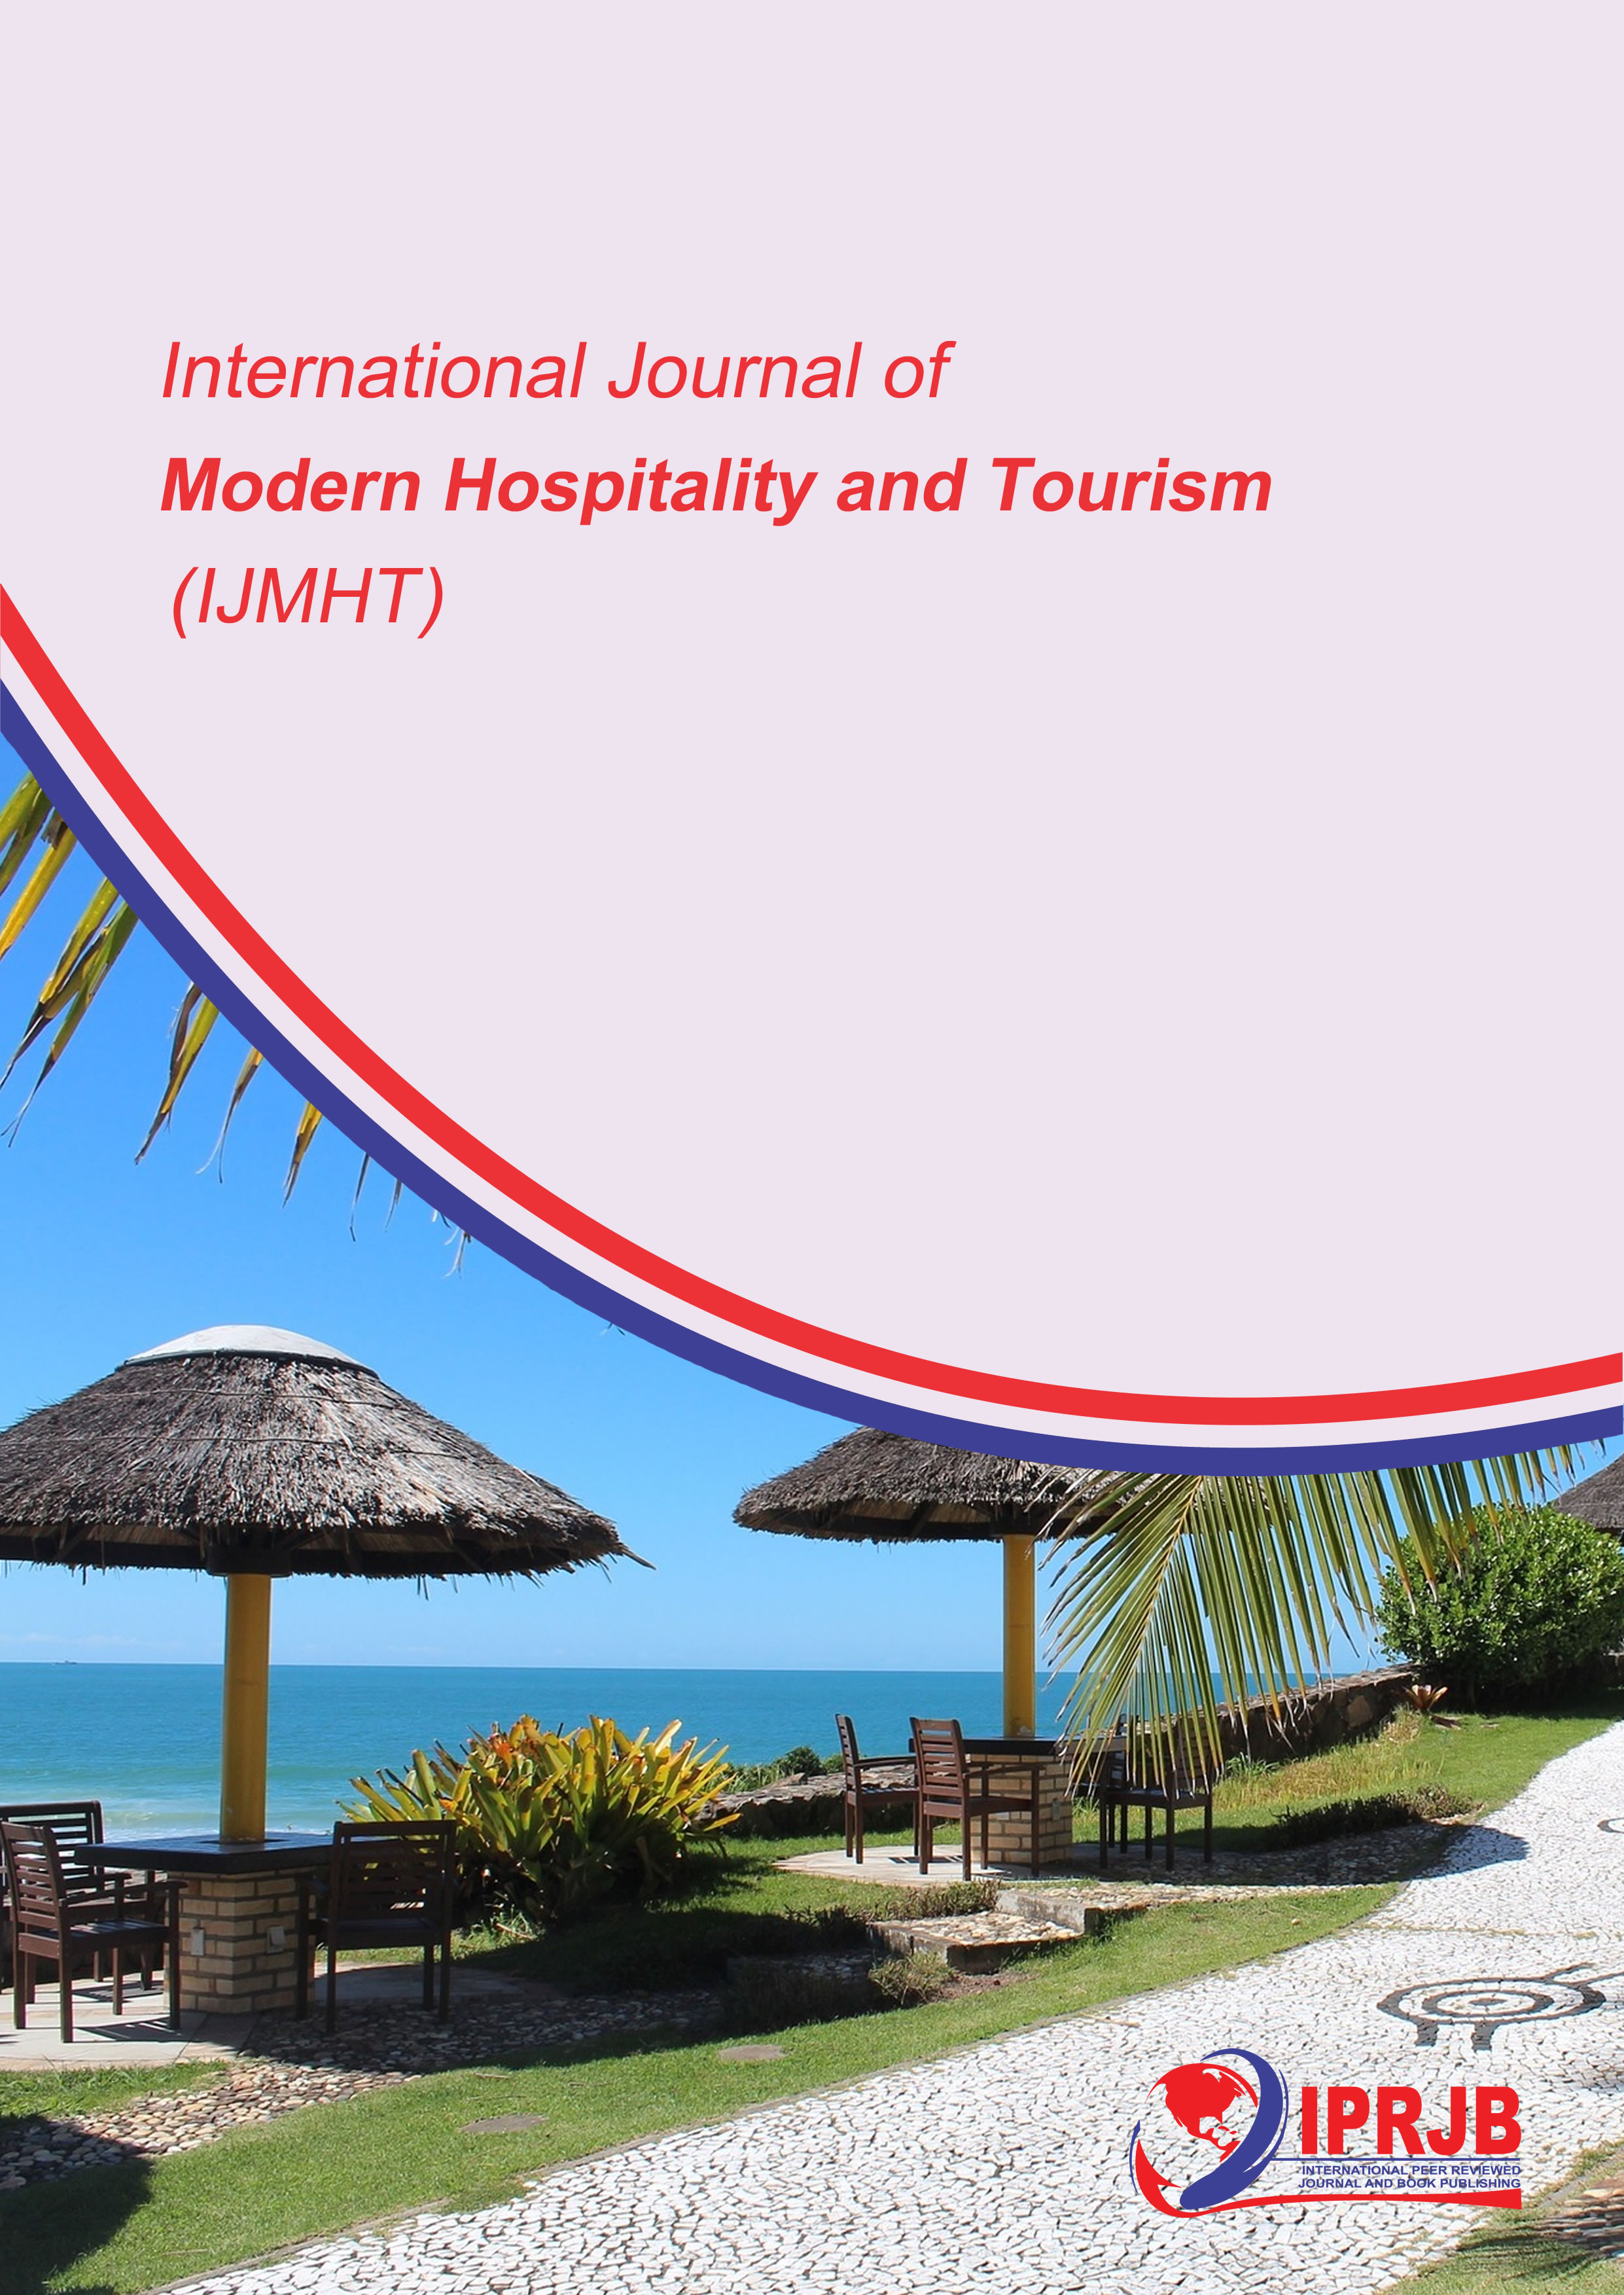 hospitality and tourism news